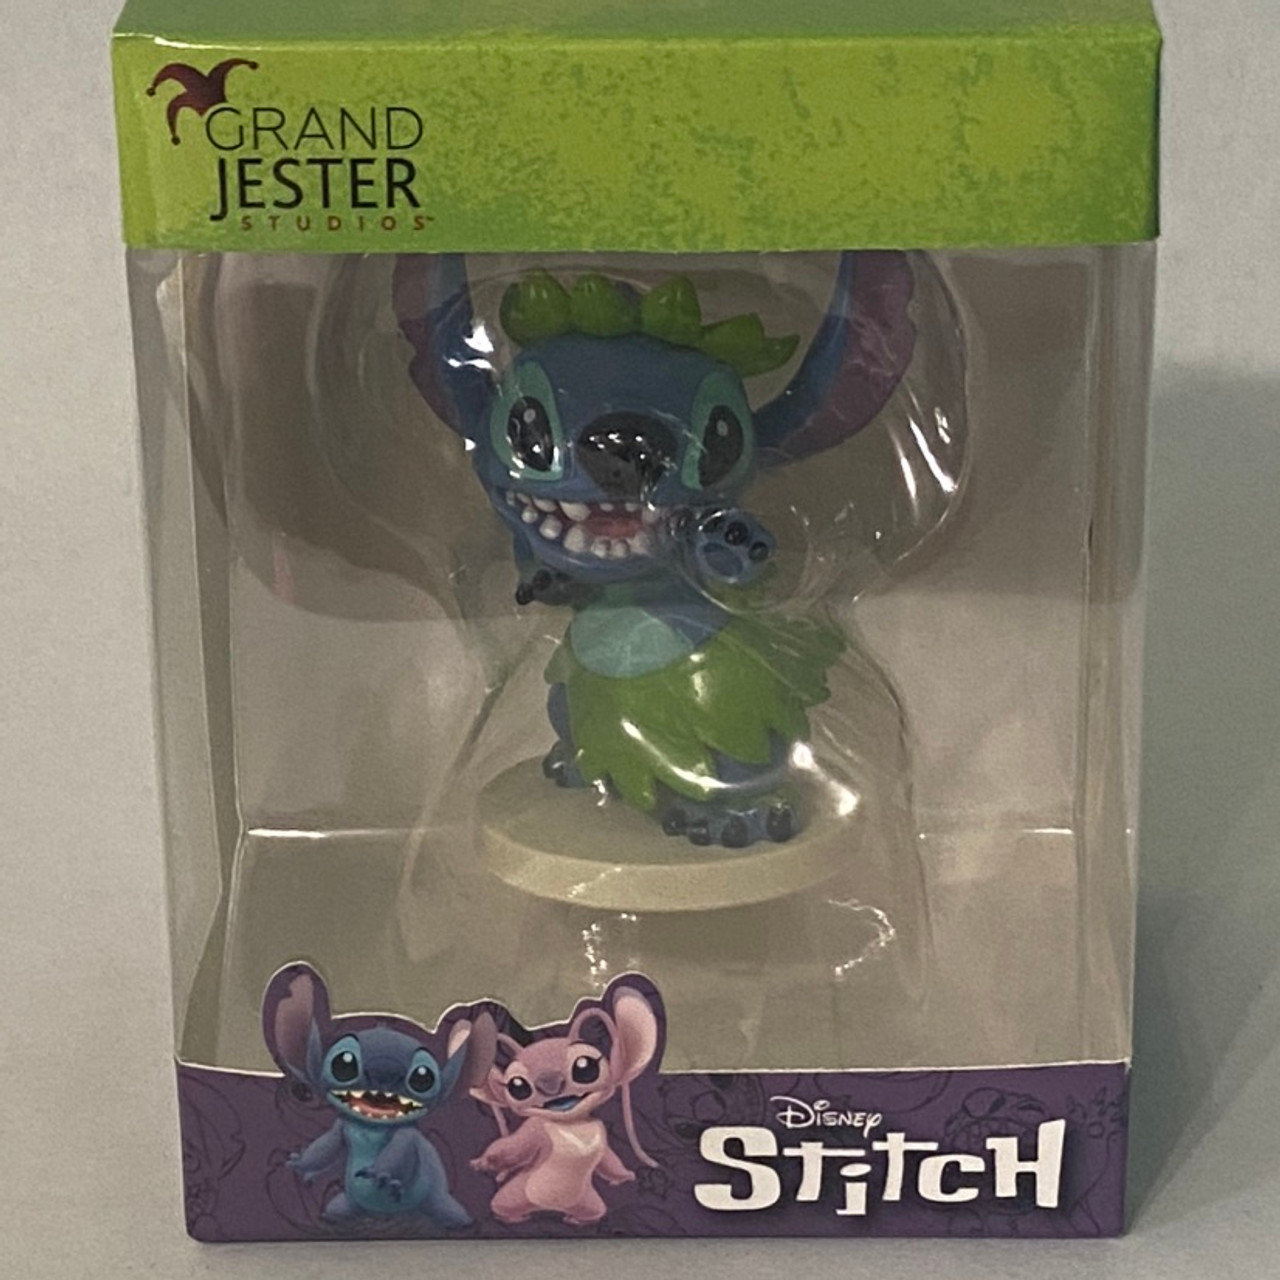 Grand Jester Studios Dancing Stitch Figurine